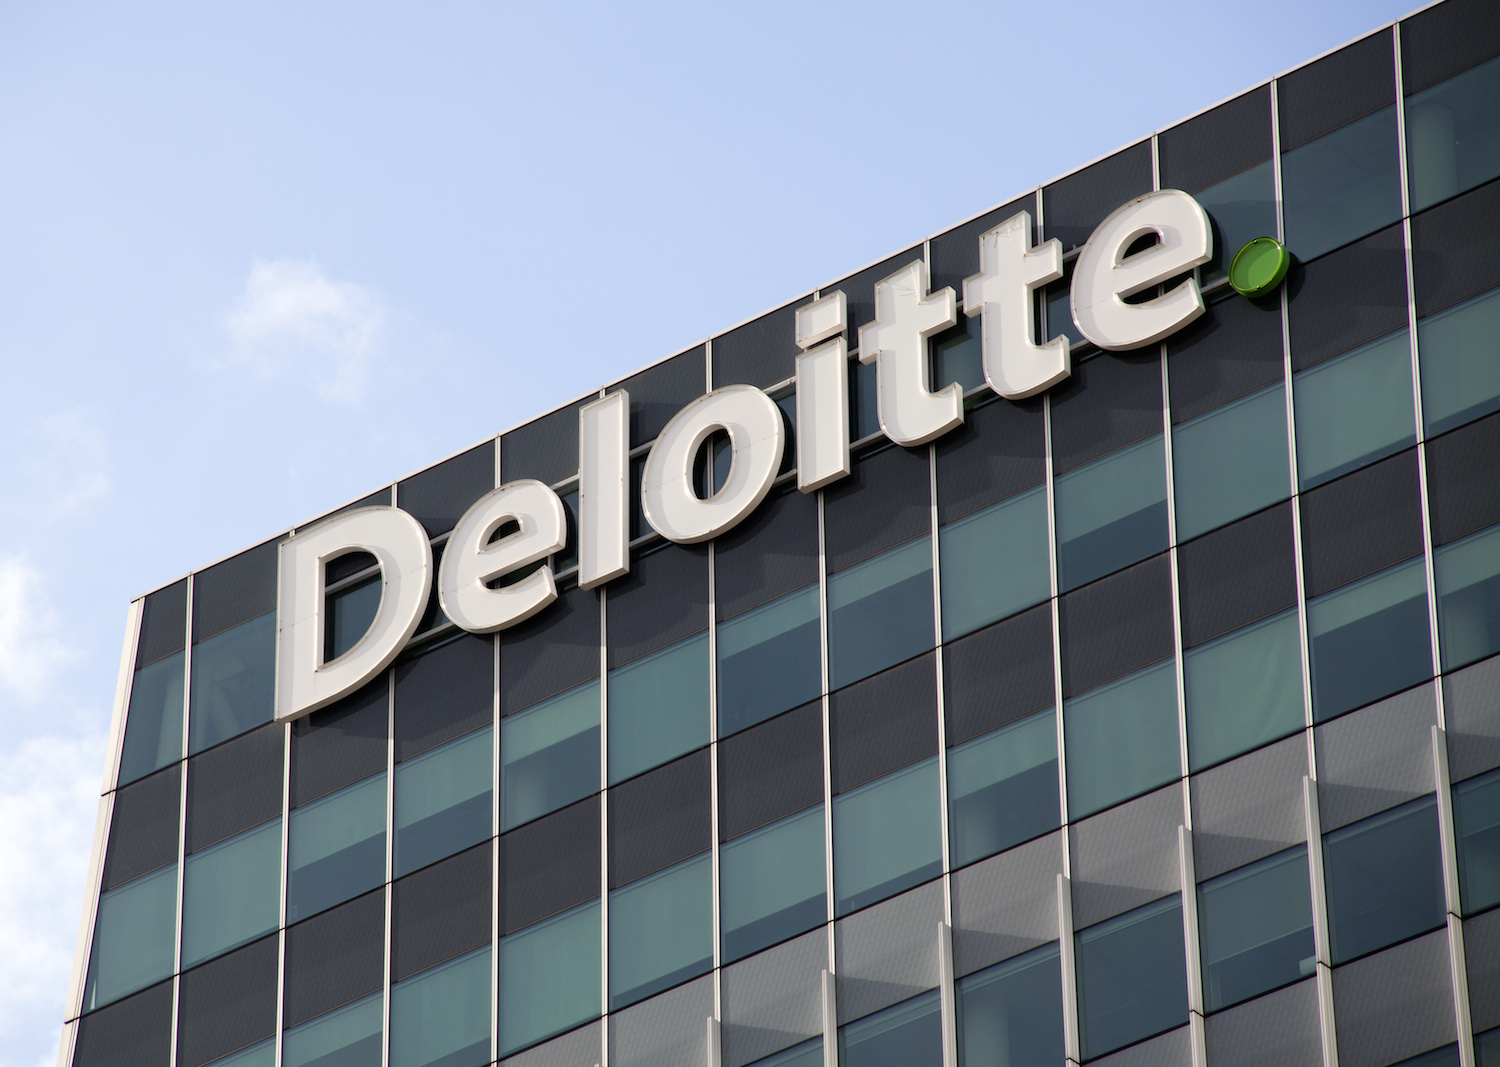 Studiu Deloitte: ponderea angajaților ale căror roluri s-au schimbat în urma implementării soluțiilor de automatizare continuă să crească și ajunge la o treime la nivel global